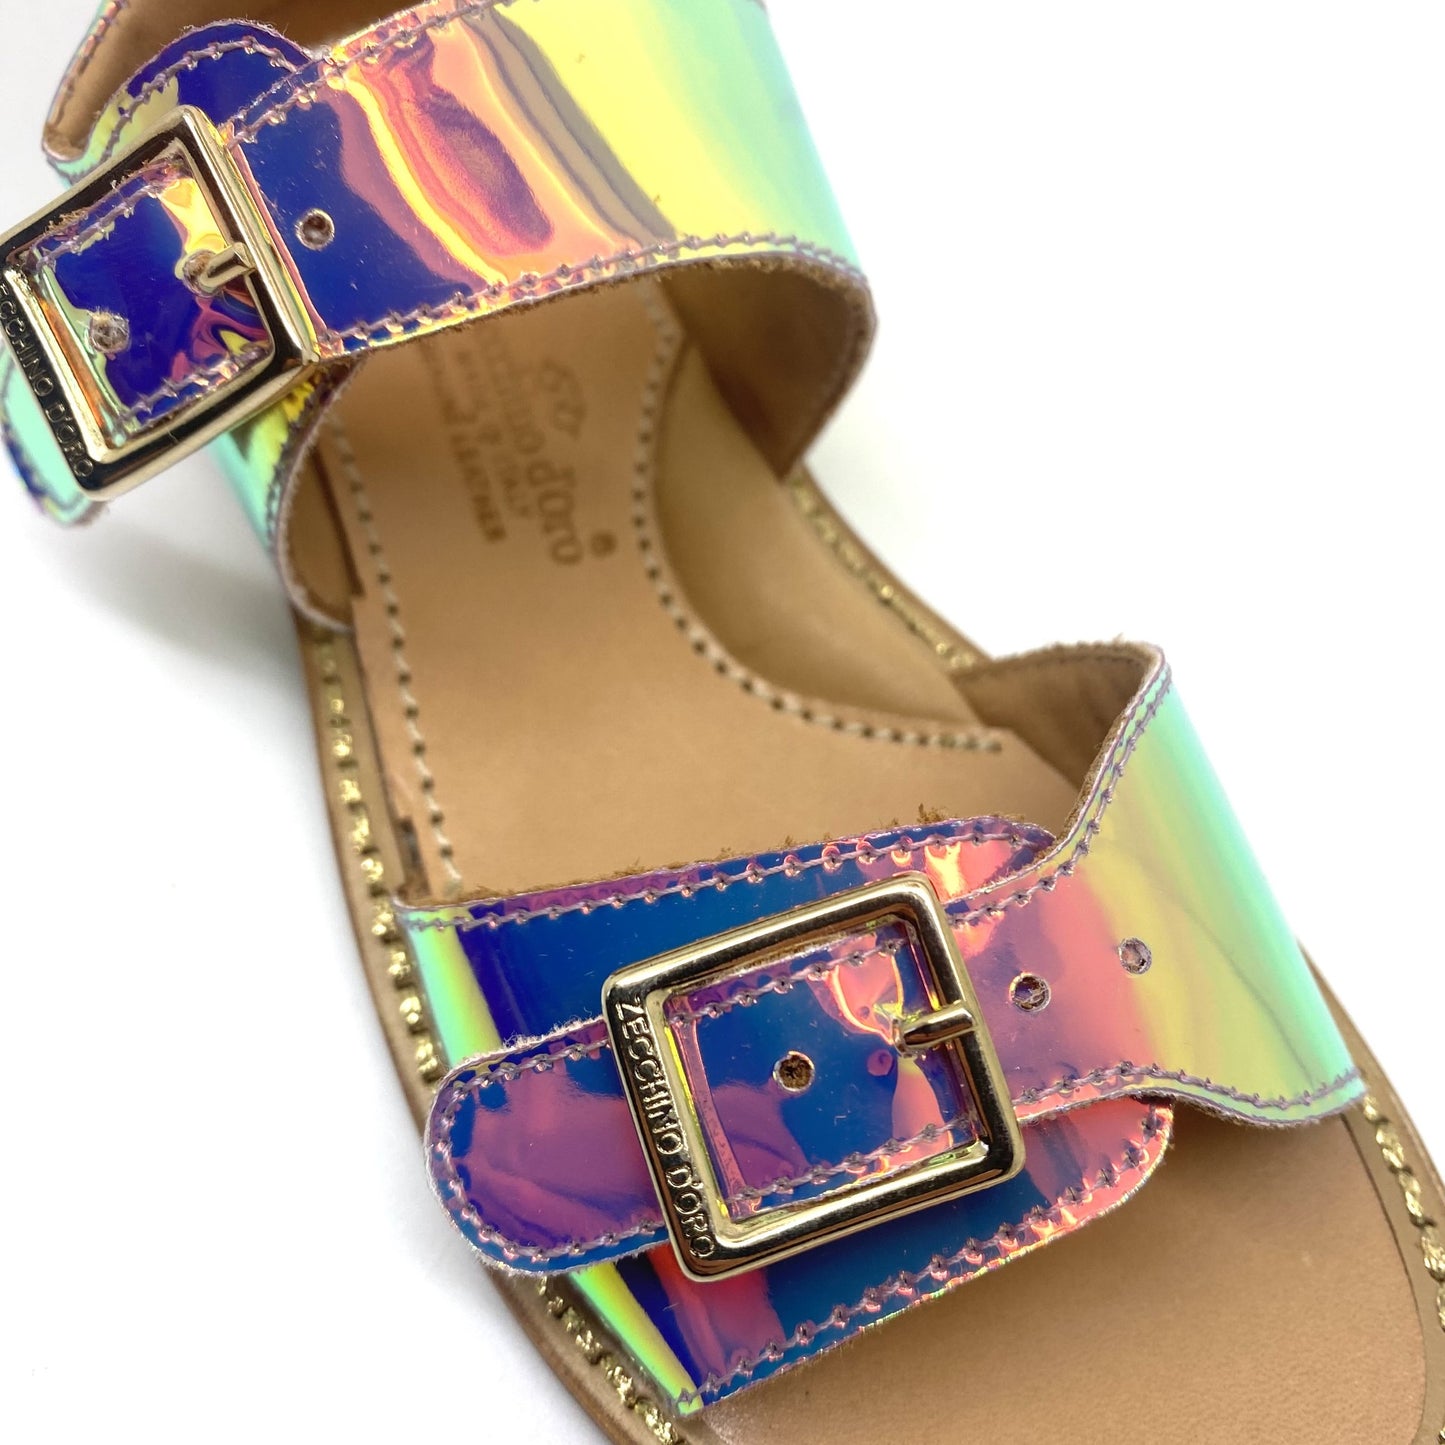 Zecchino D'oro sandaal met heel veel kleurtjes.